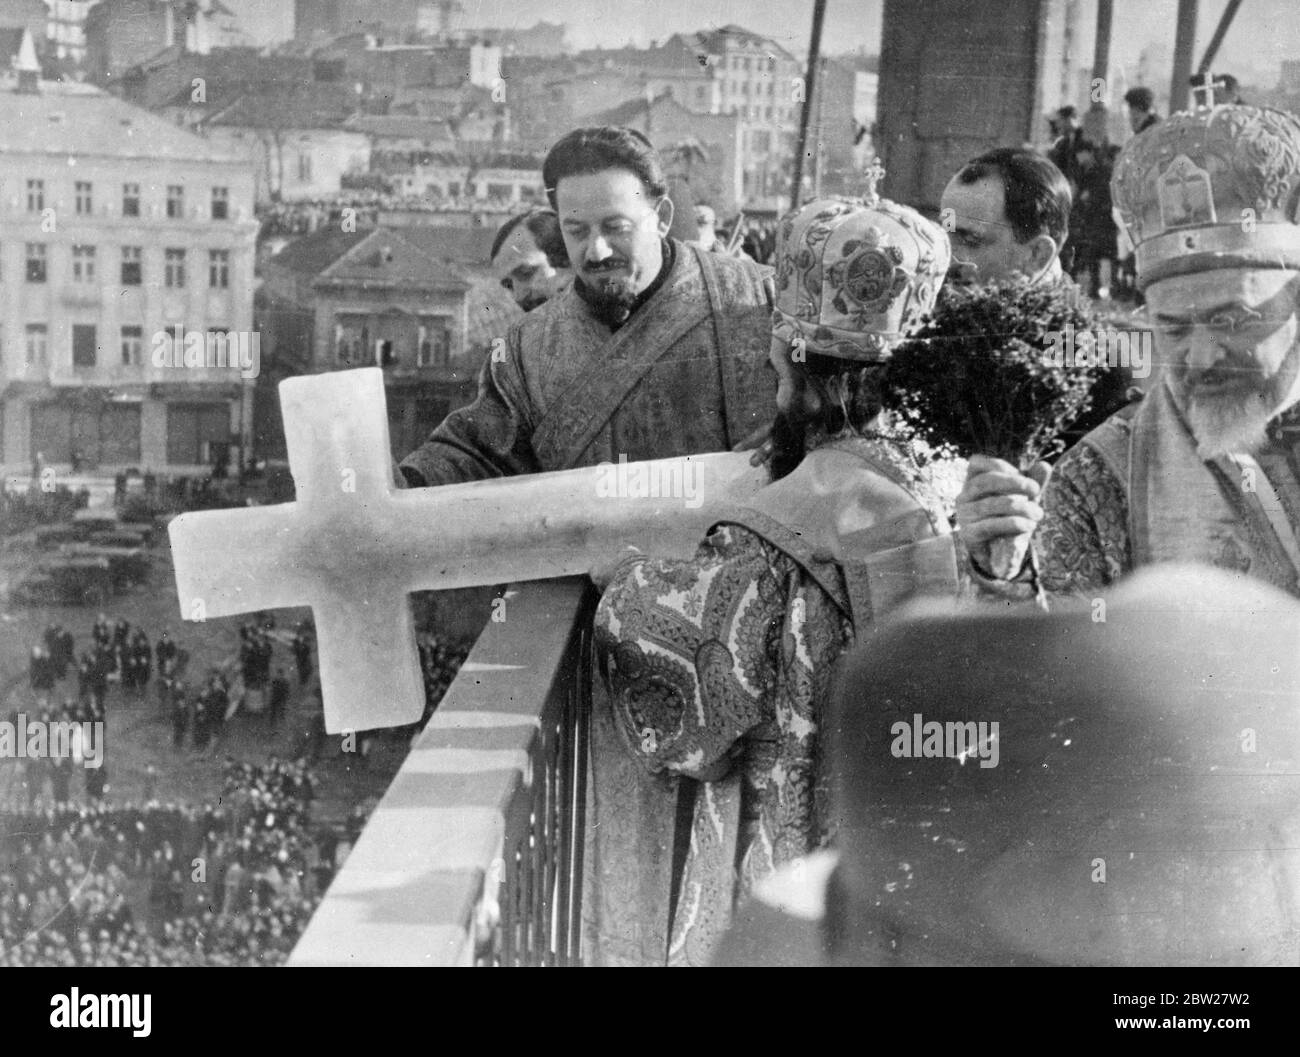 Croix de biais coulé dans le Danube, 'paix' entre l'église et l'état. La coulée annuelle de la croix de glace dans le Danube à Belgrade, en Yougoslavie, a eu une signification inhabituelle cette année. Pour la première fois, des membres de la garnison de Belgrade ont assisté à la cérémonie marquant la fin de la «guerre» entre l'Église orthodoxe et l'État au-dessus du Concordat du Vatican, qui est maintenant officiellement abandonnée par le gouvernement yougoslave. Le conflit a entraîné des émeutes dans tout le pays l'année dernière. Photoshows, le Metropolitan serbe, Mgr Dosity, qui jette la croix de glace dans le Danube depuis un pont à Belgrade. 22 janvier 1938 Banque D'Images